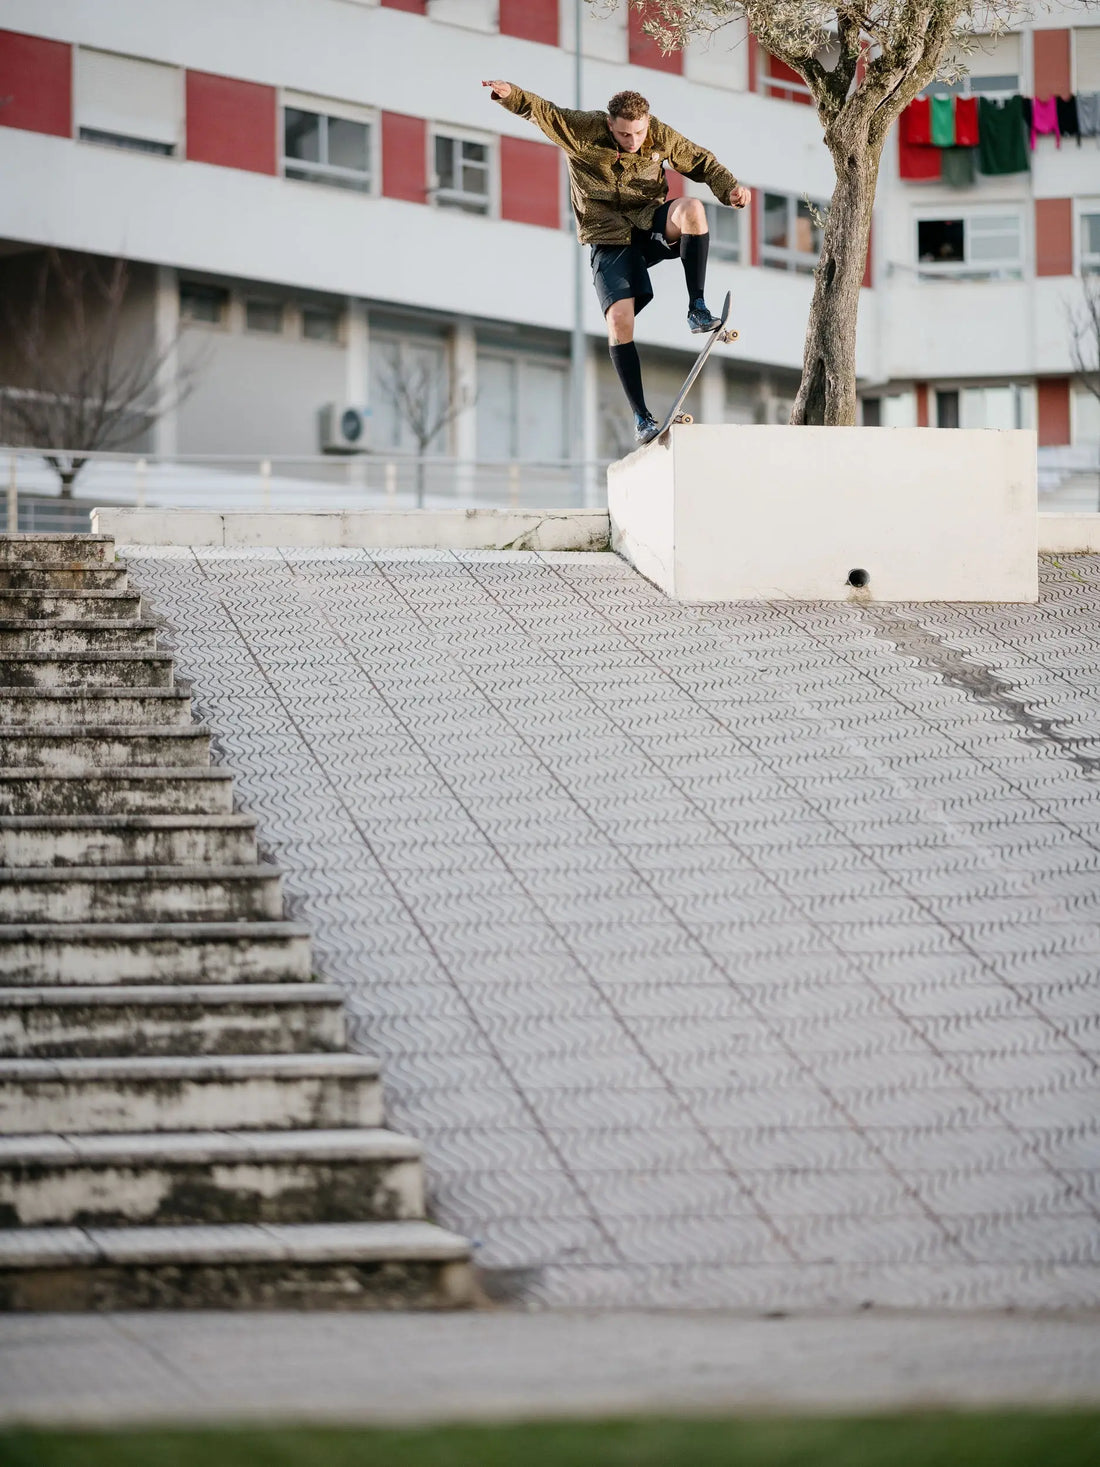 skateboarding sliding a ledge